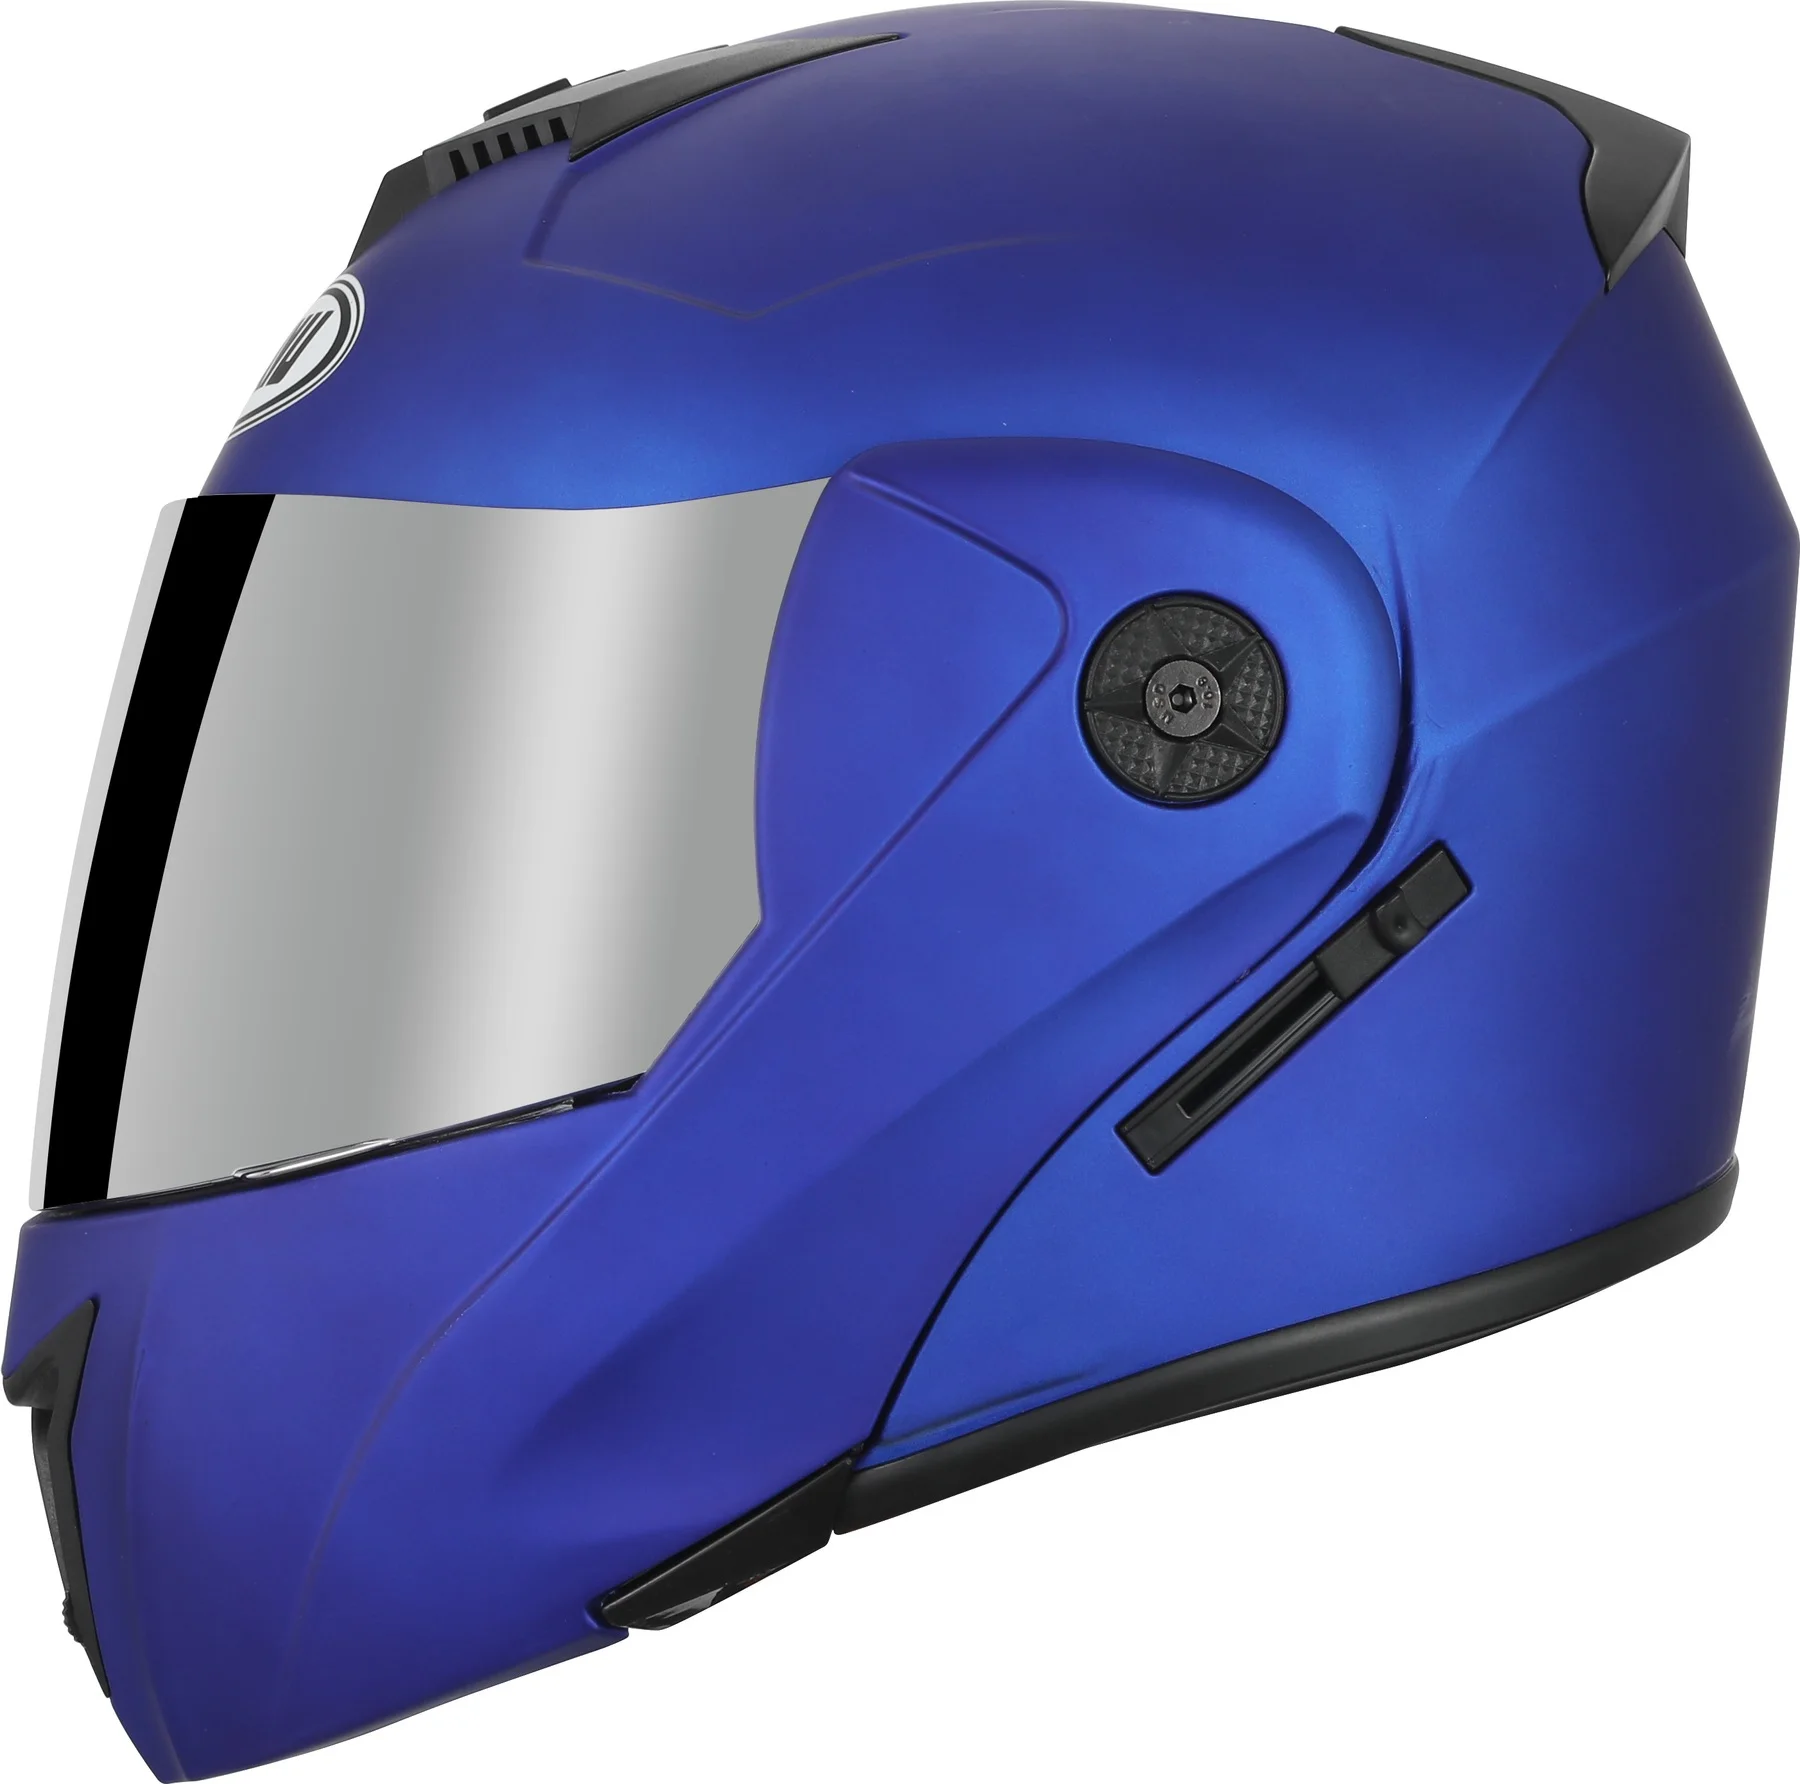 OYHN Casco de Moto Casco Moto Modular con Bluetooth Integrado Motocicleta Cara Completa Visera abatible Casco